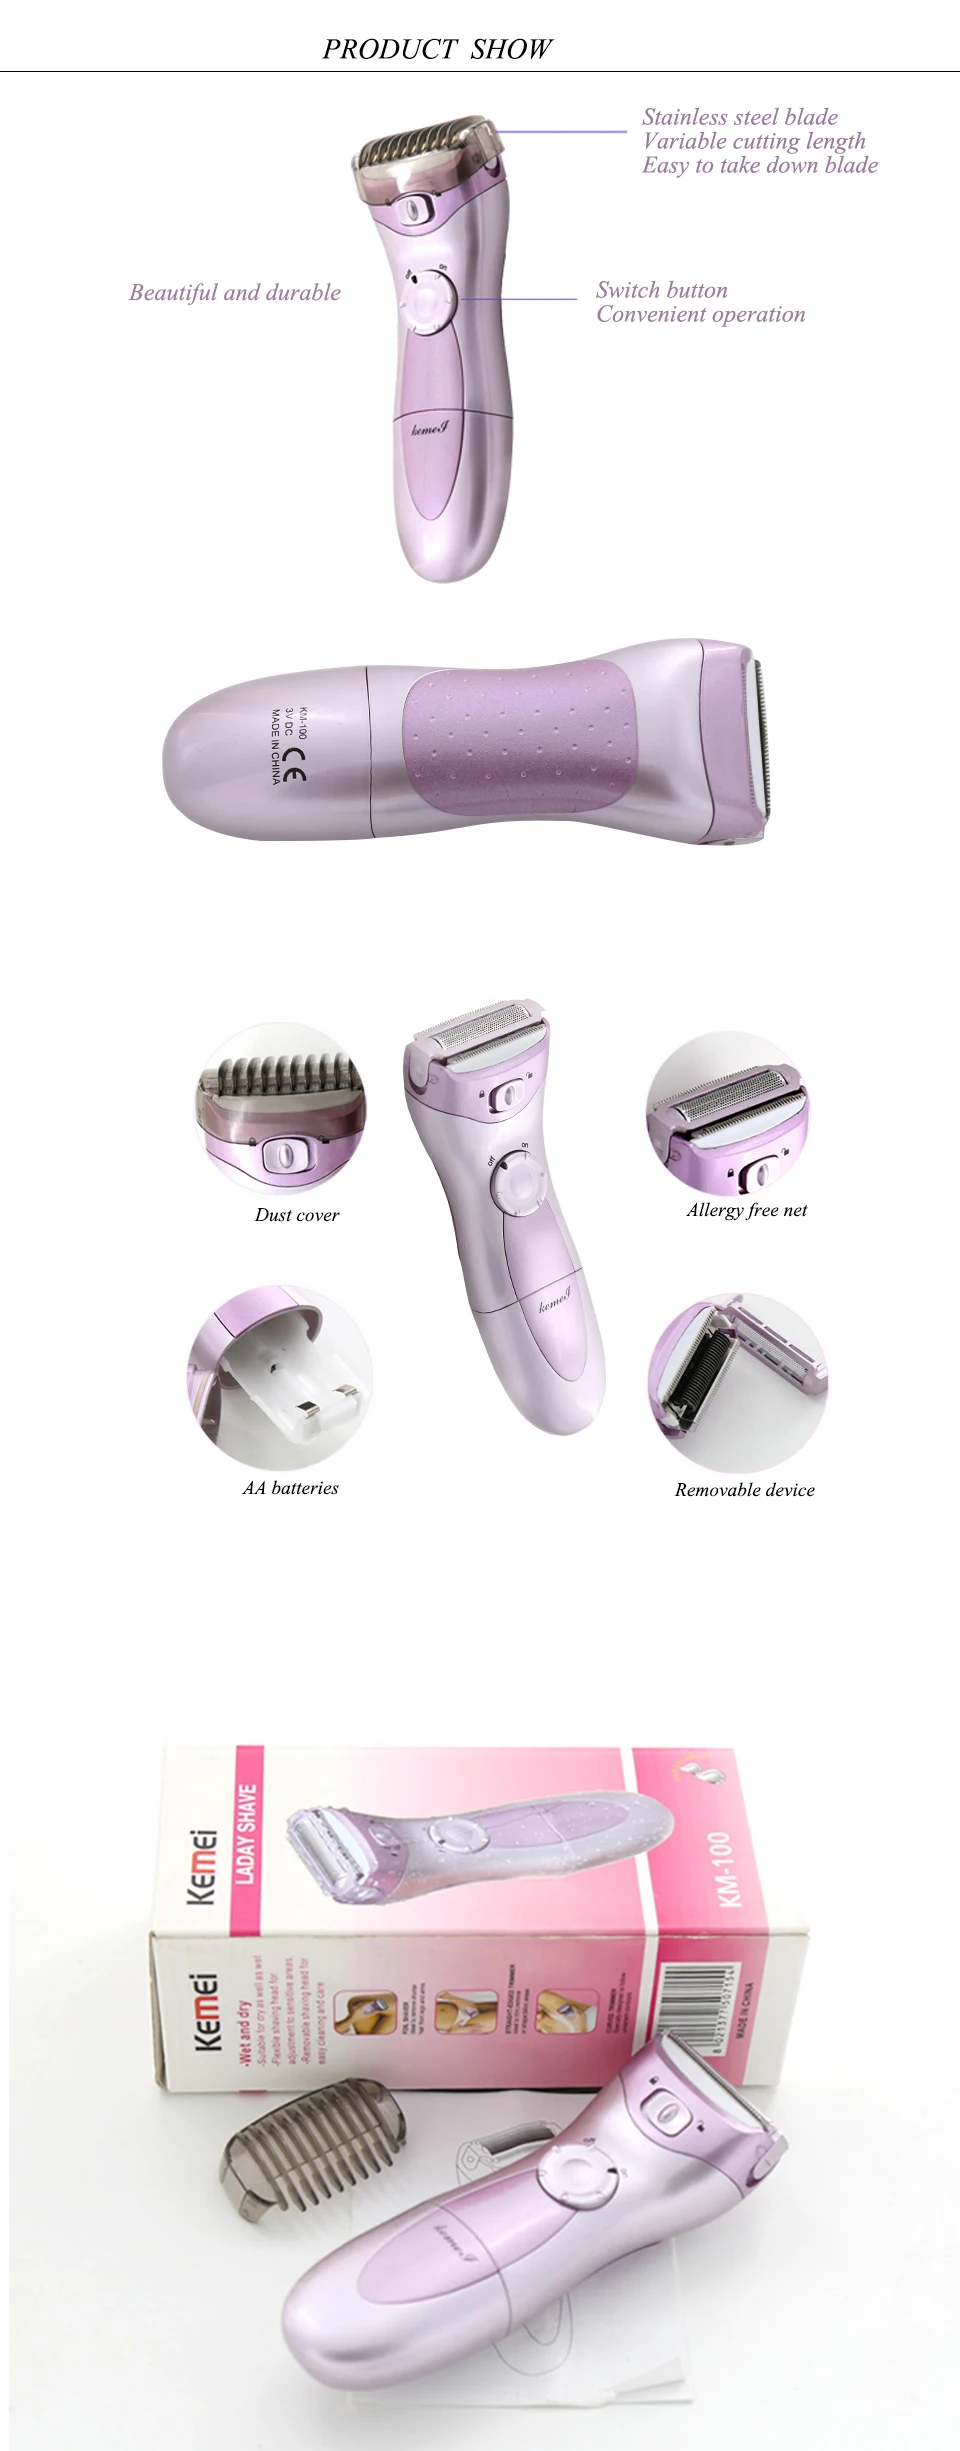 KEMEI сухие батареи фиолетовый эпилятор для женщин удаление волос электрическая бритва Леди Триммер для женщин депилятор для всего тела Бикини